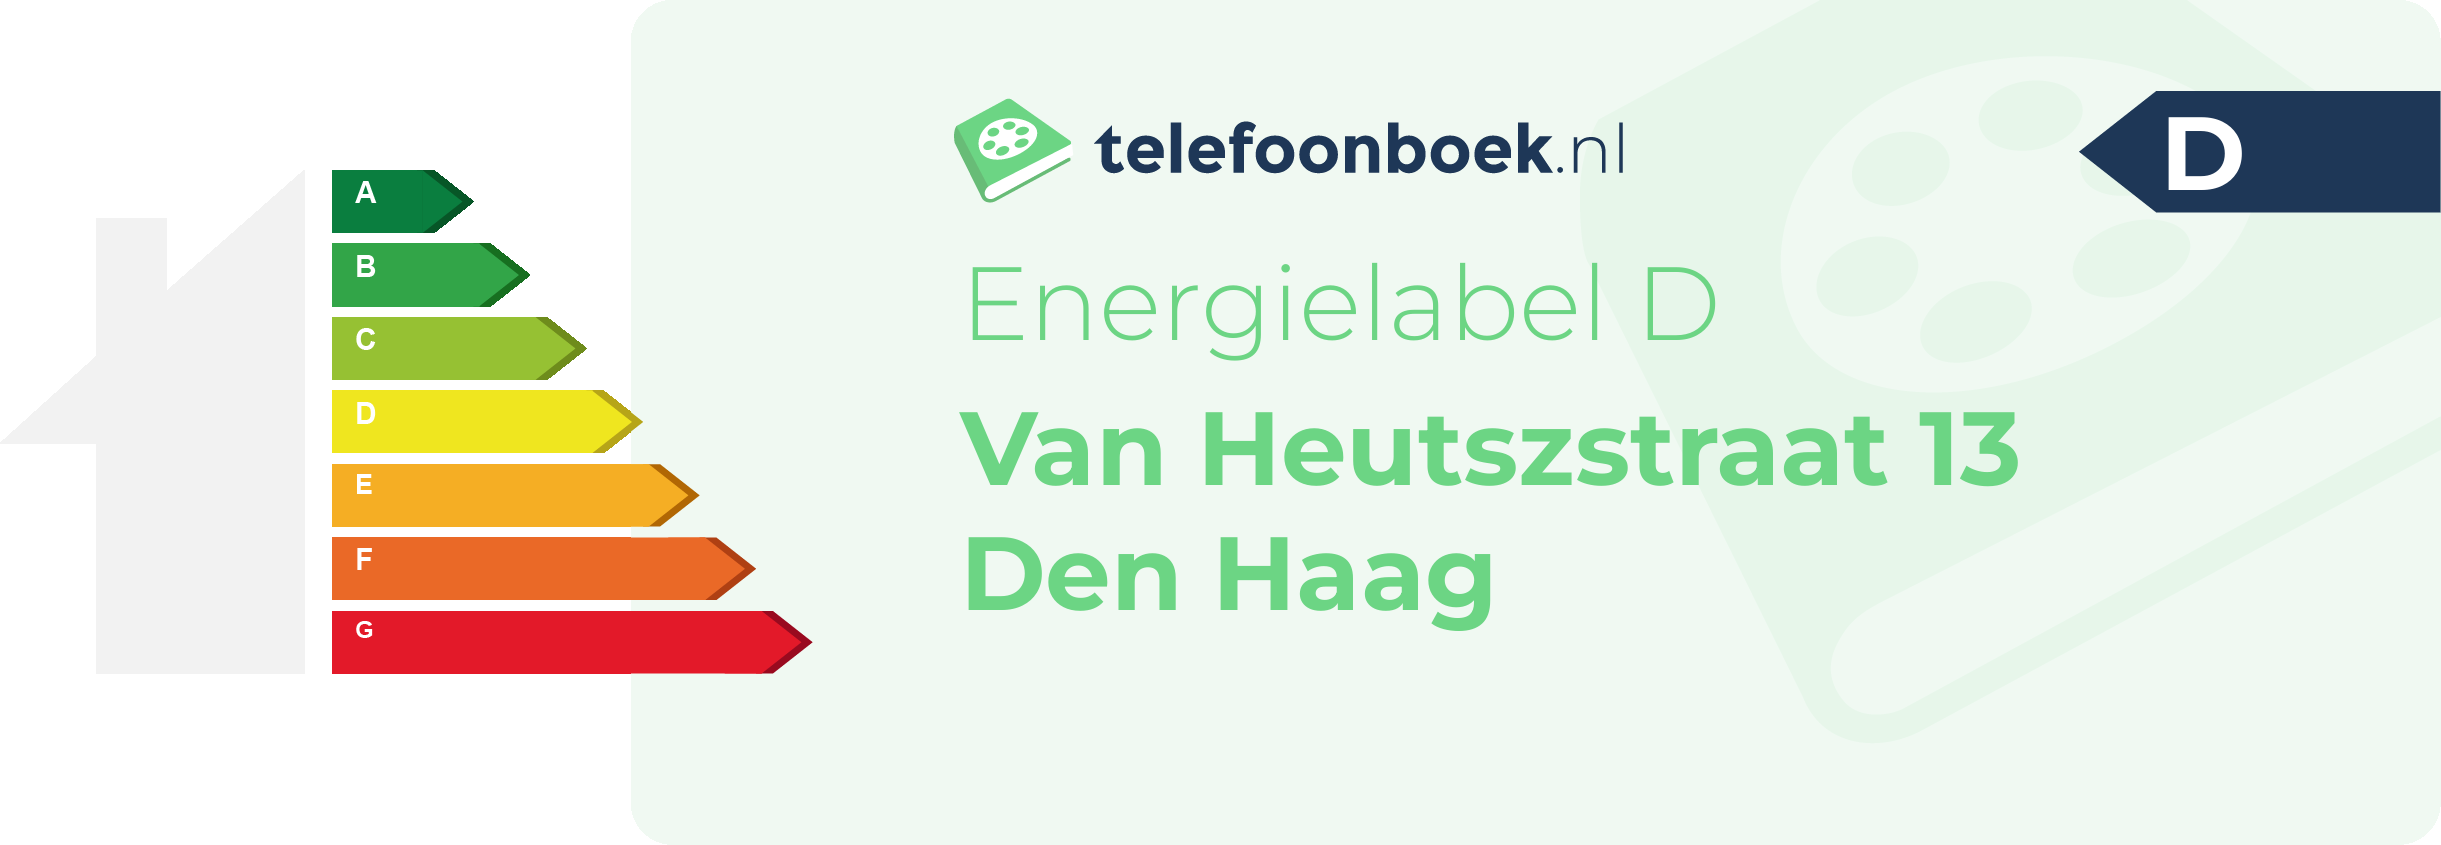 Energielabel Van Heutszstraat 13 Den Haag